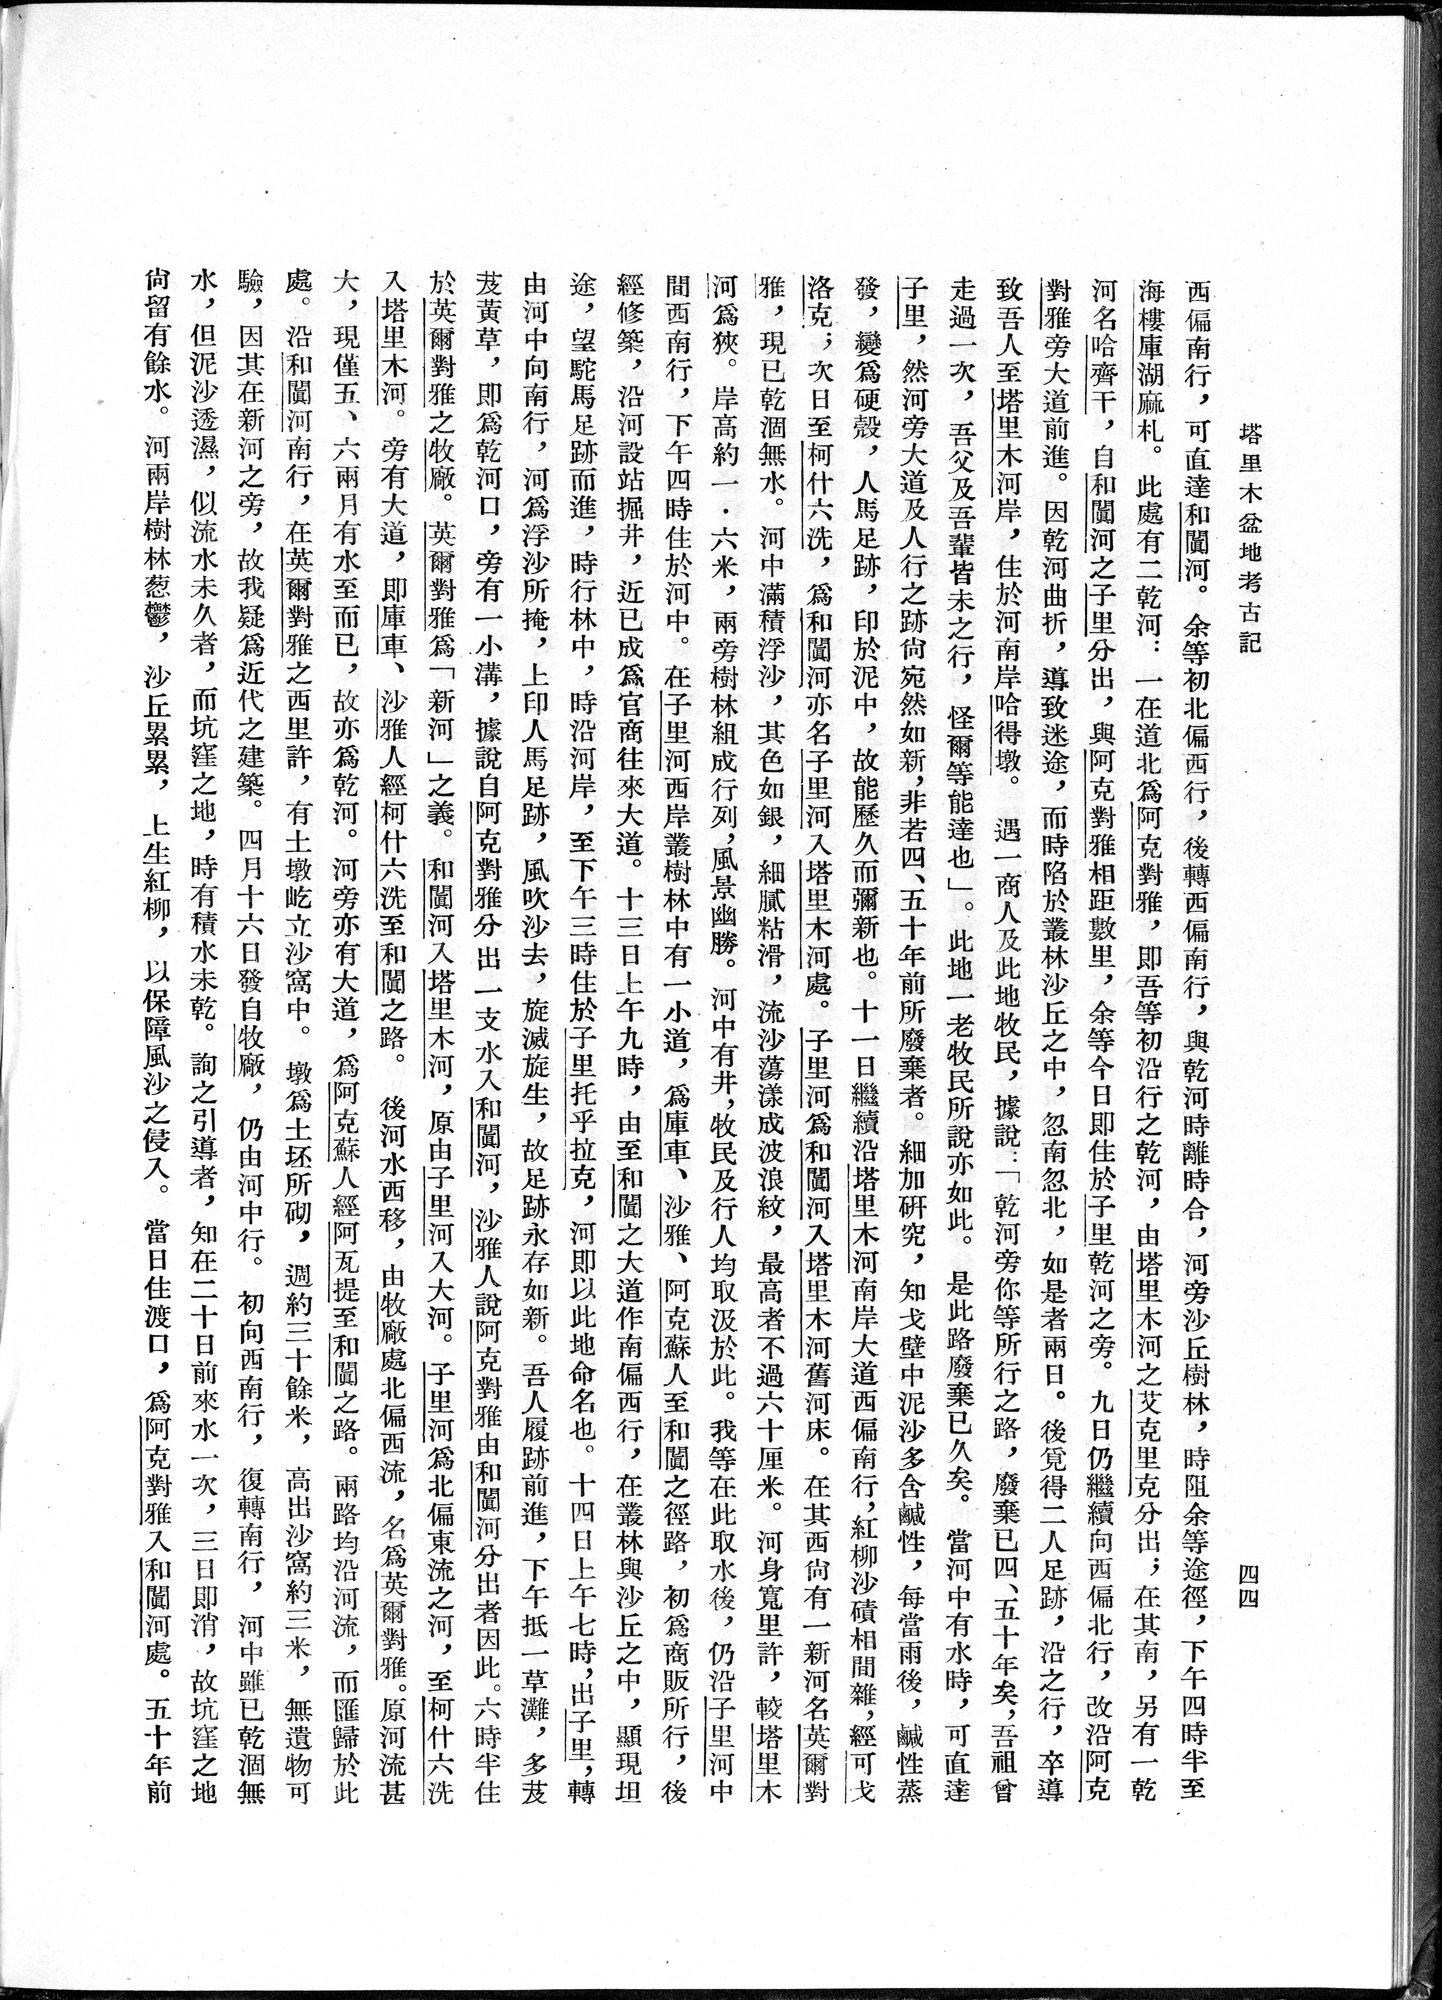 塔里木盆地考古記 : vol.1 / Page 68 (Grayscale High Resolution Image)